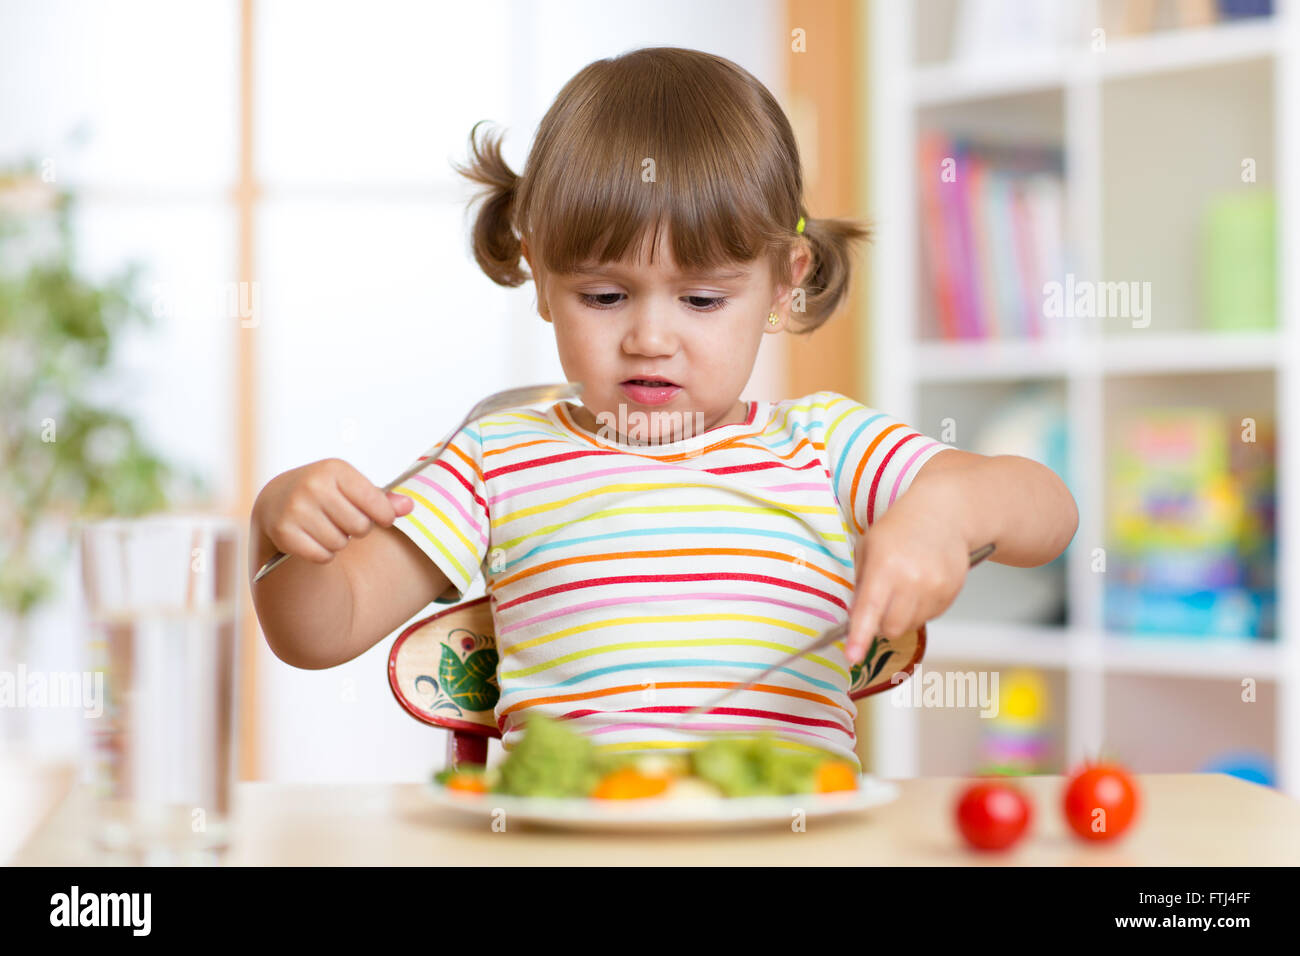 Little child girl refusing to eat her dinner Stock Photo